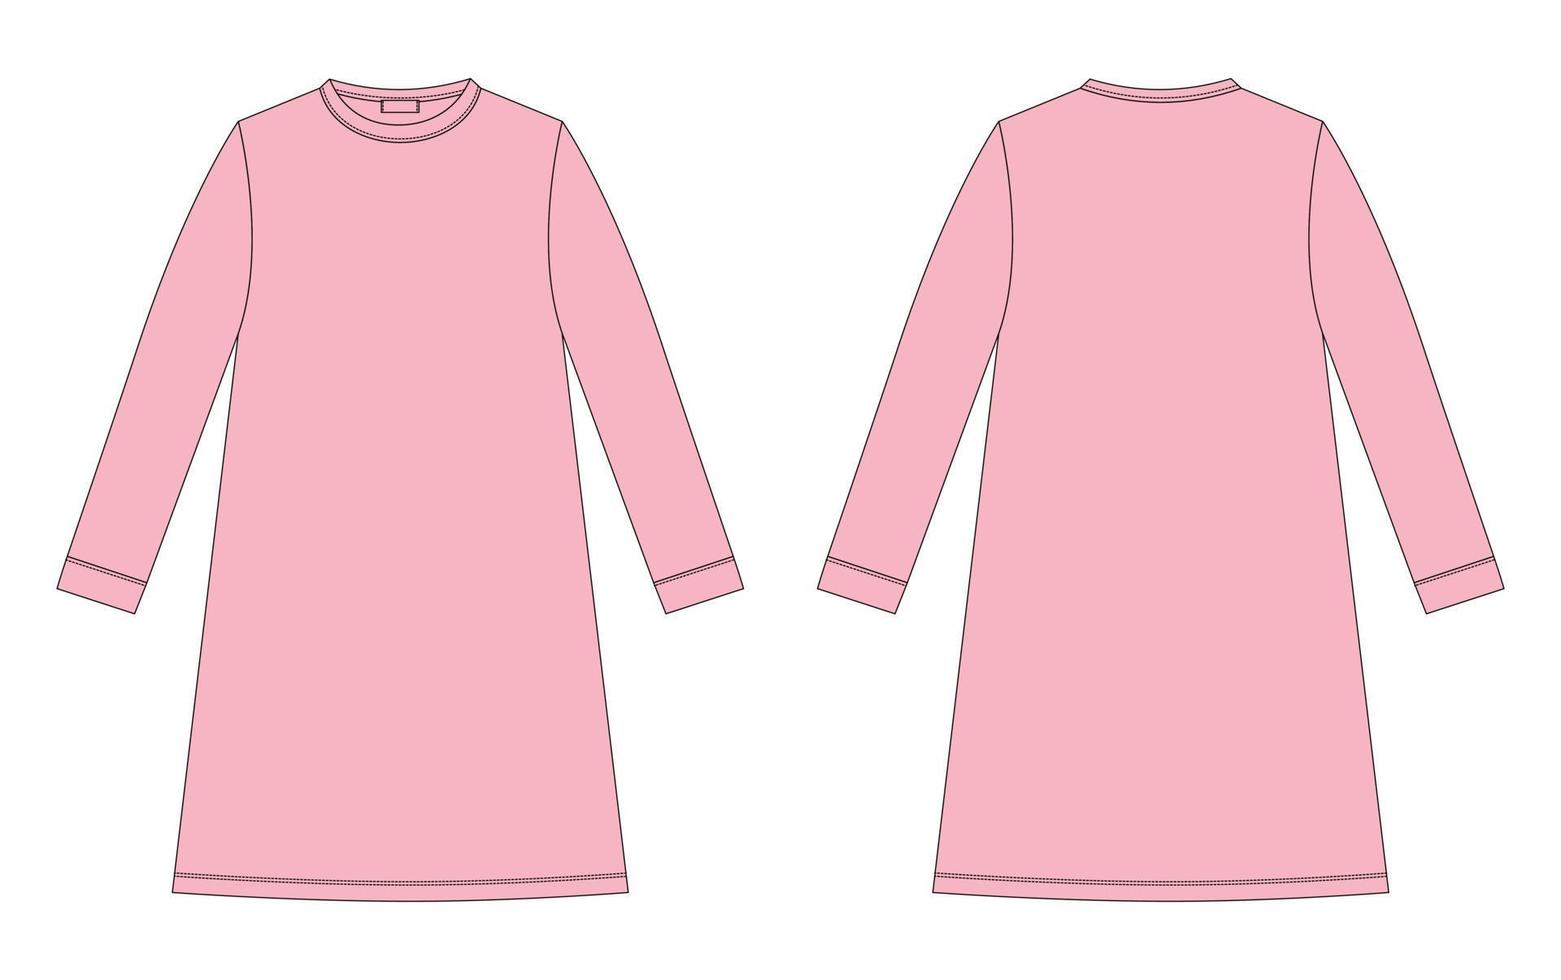 Nachthemd technische Skizze. Baumwollunterhemd für Kinder. Pfirsichrosa Farbe. Nachthemd. vektor